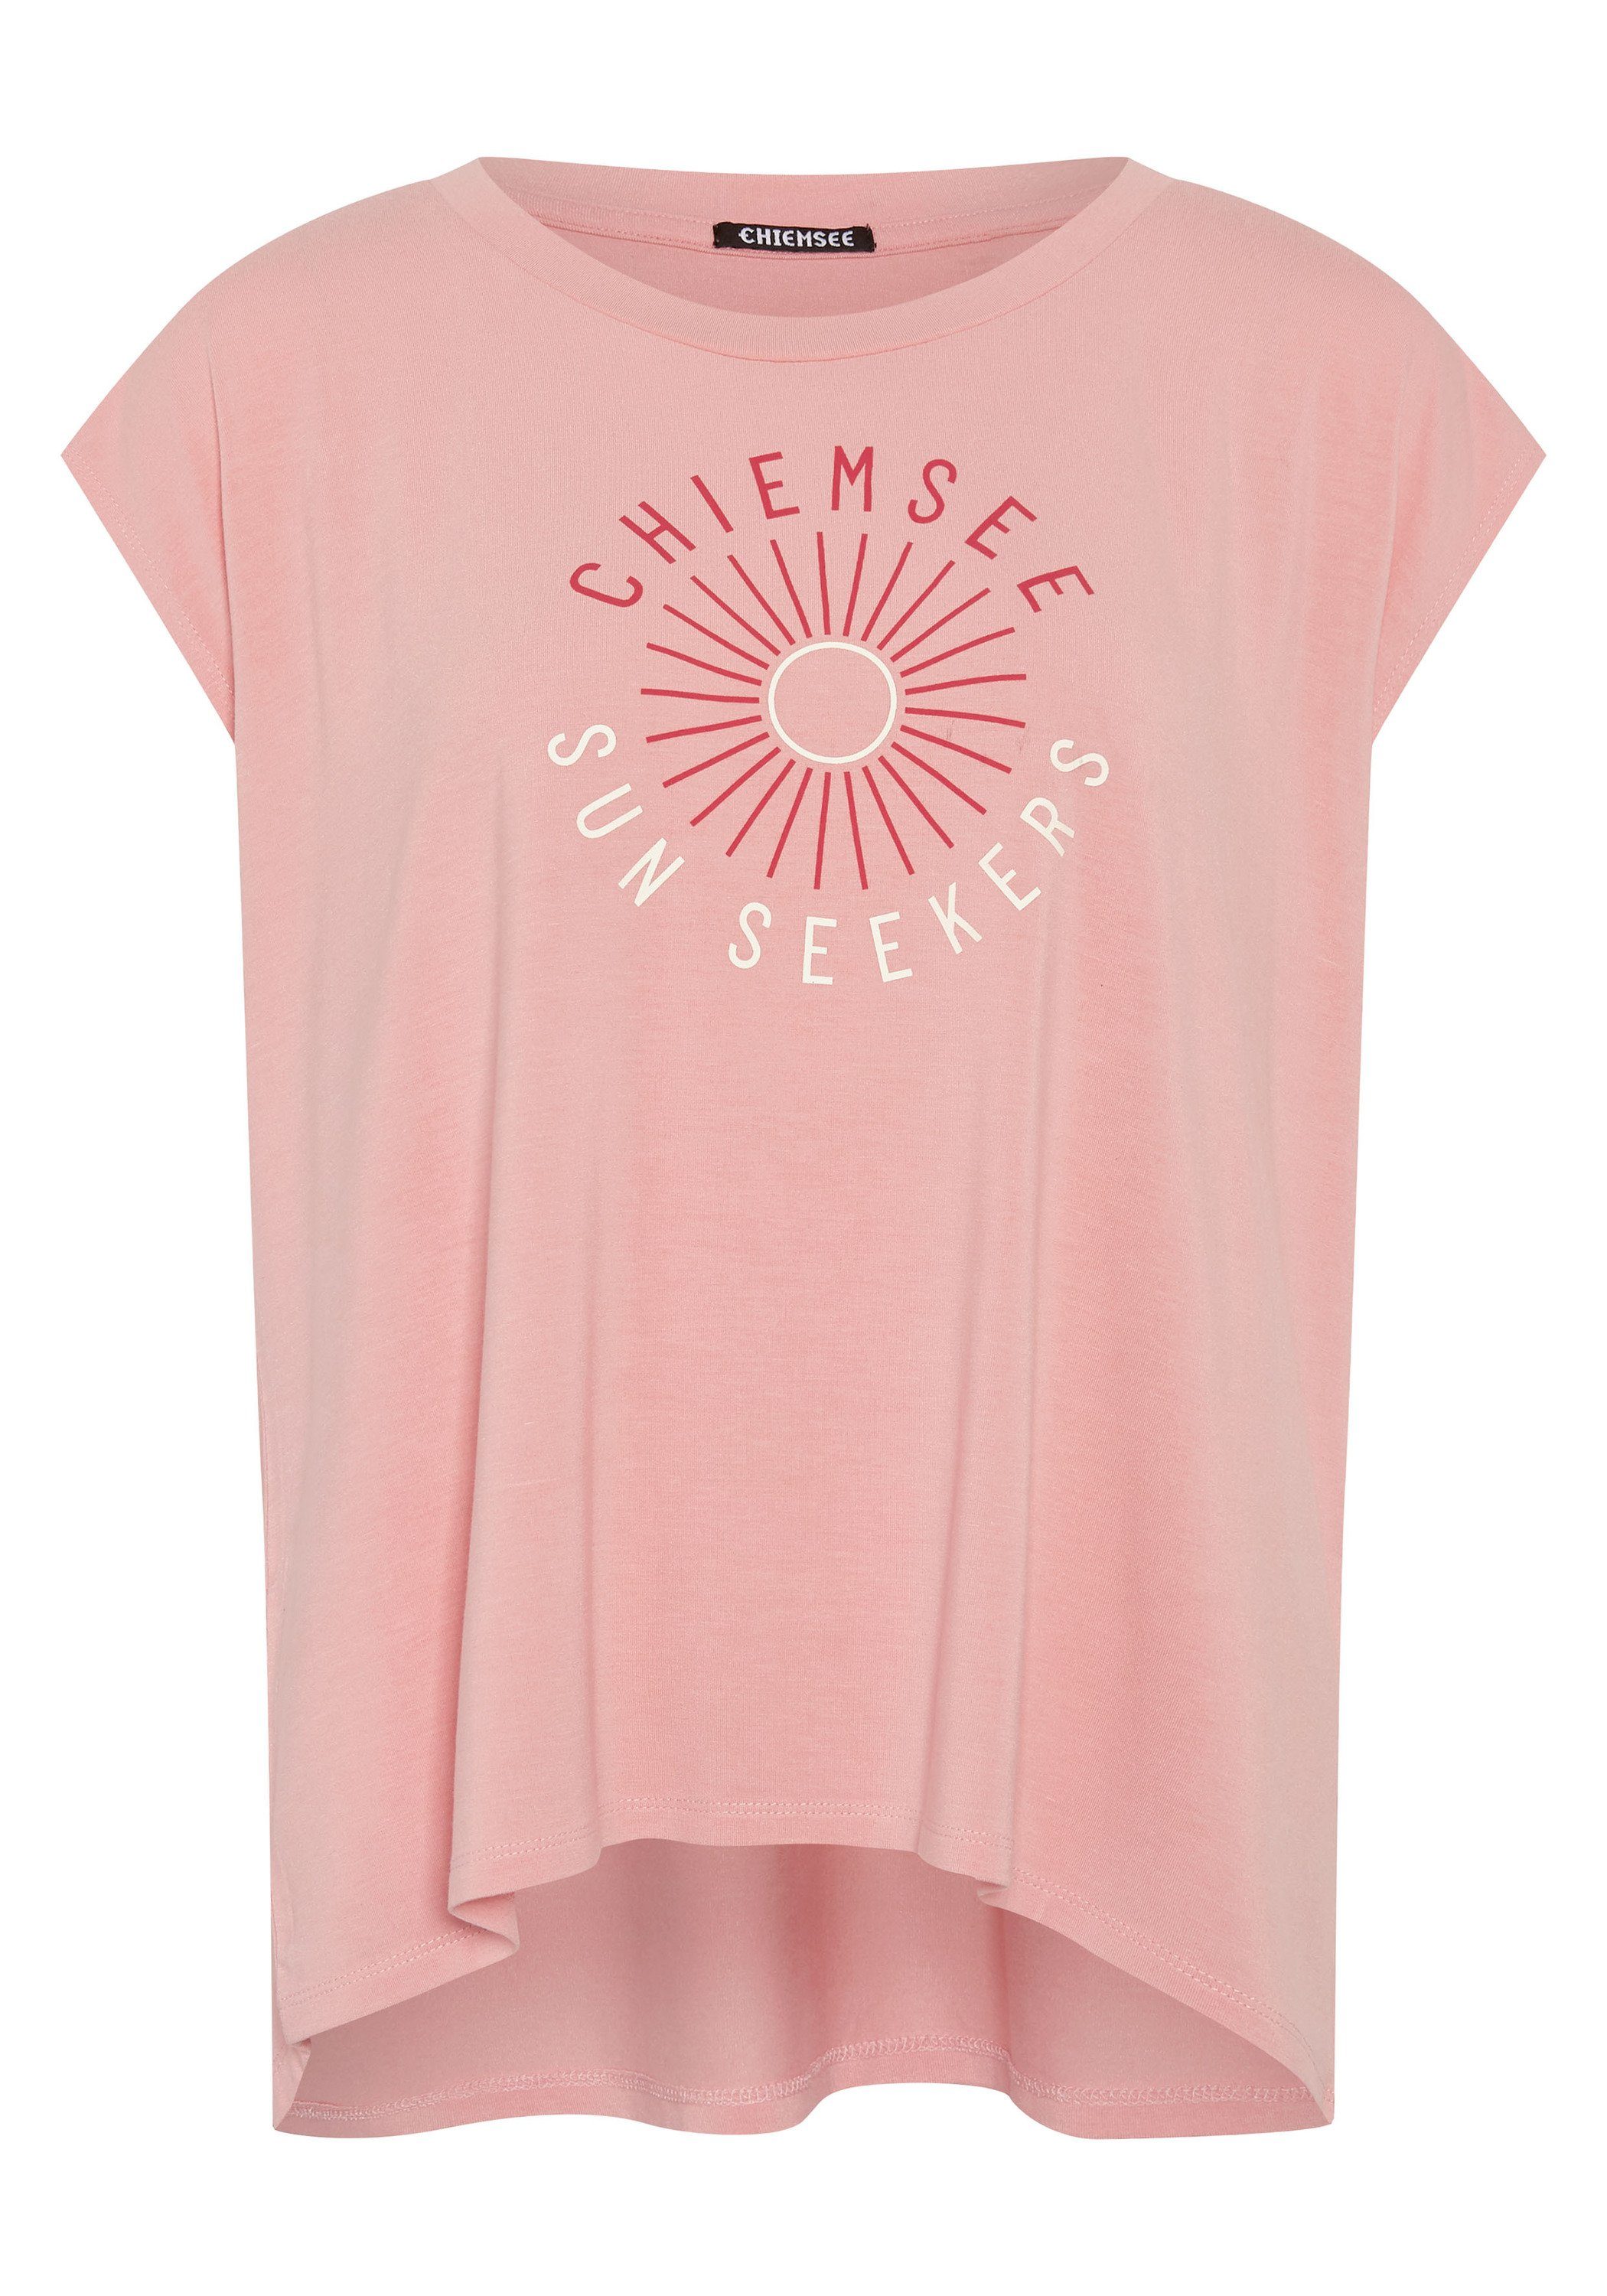 Chiemsee Print-Shirt T-Shirt mit Schriftzug und Motiv 1 14-1521 Peaches N' Cream | Rundhalsshirts